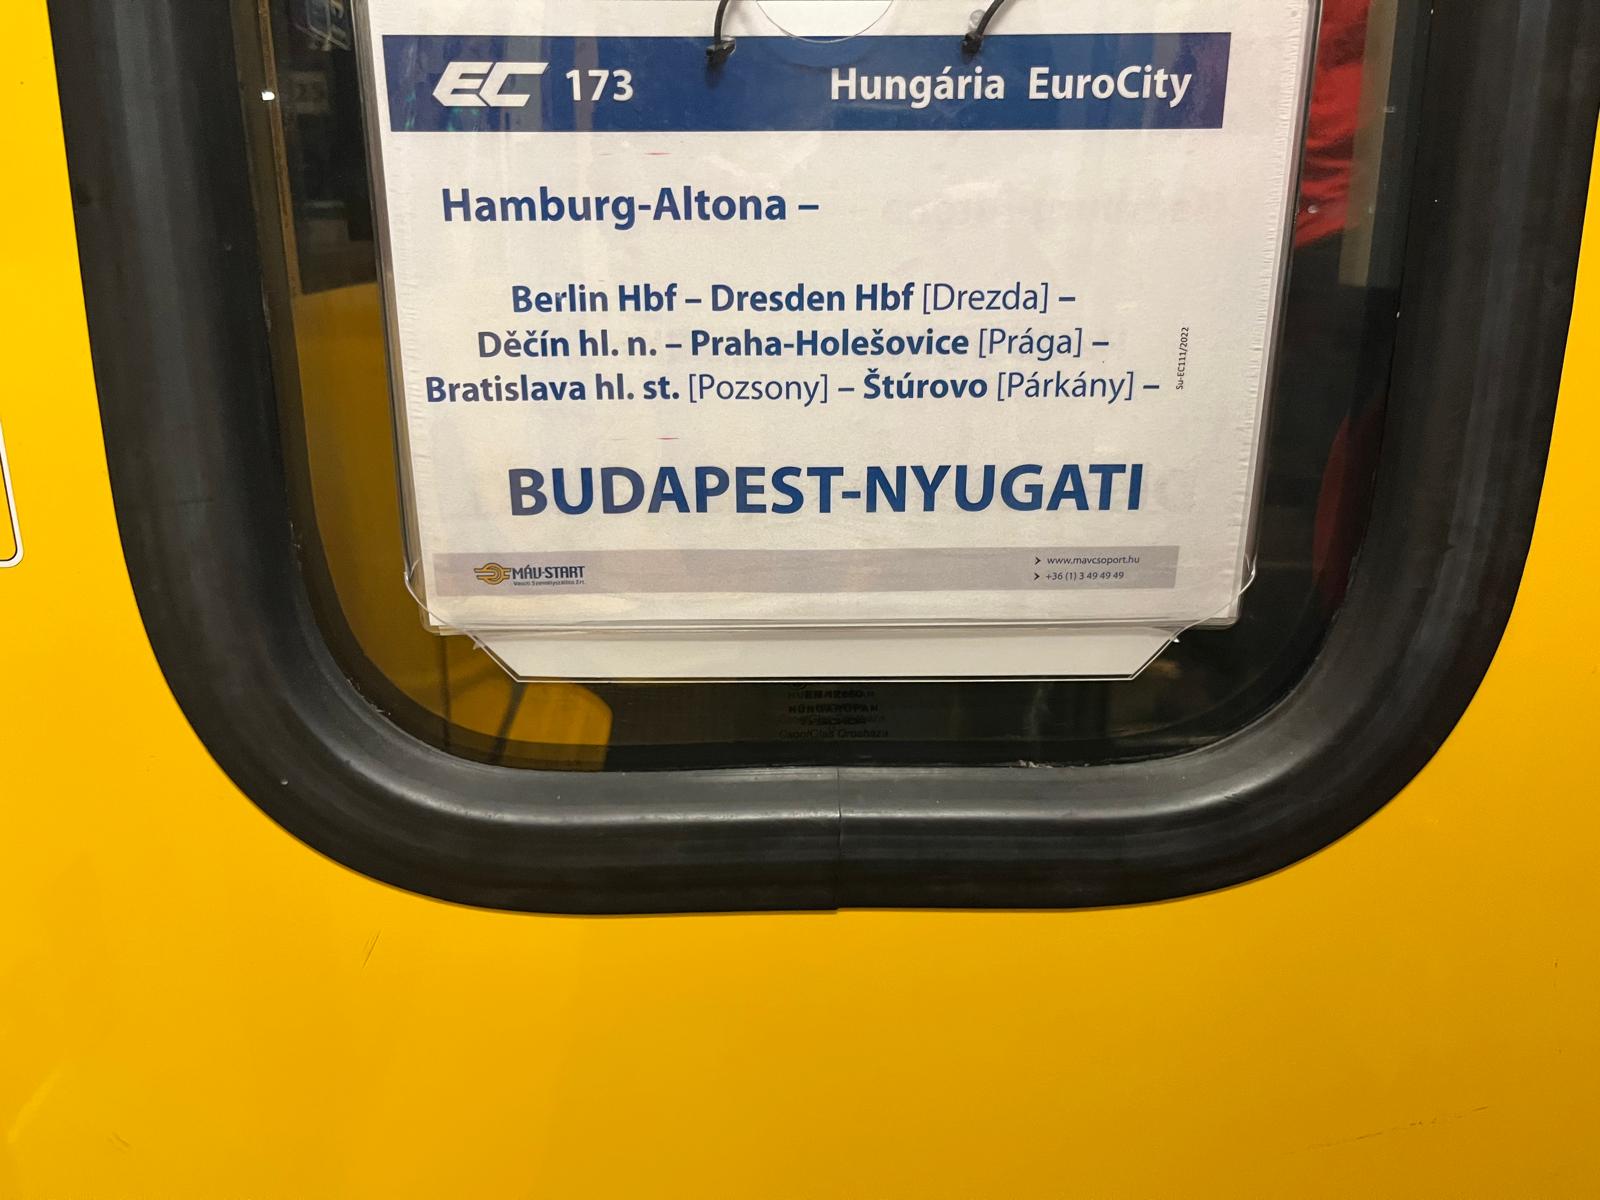 An einem gelb umrahmten Zugfenster ist ein Schild mit der Aufschrift Hungaária EuroCity: Hamburg Altona - Budapest-Nyugati zu sehen.